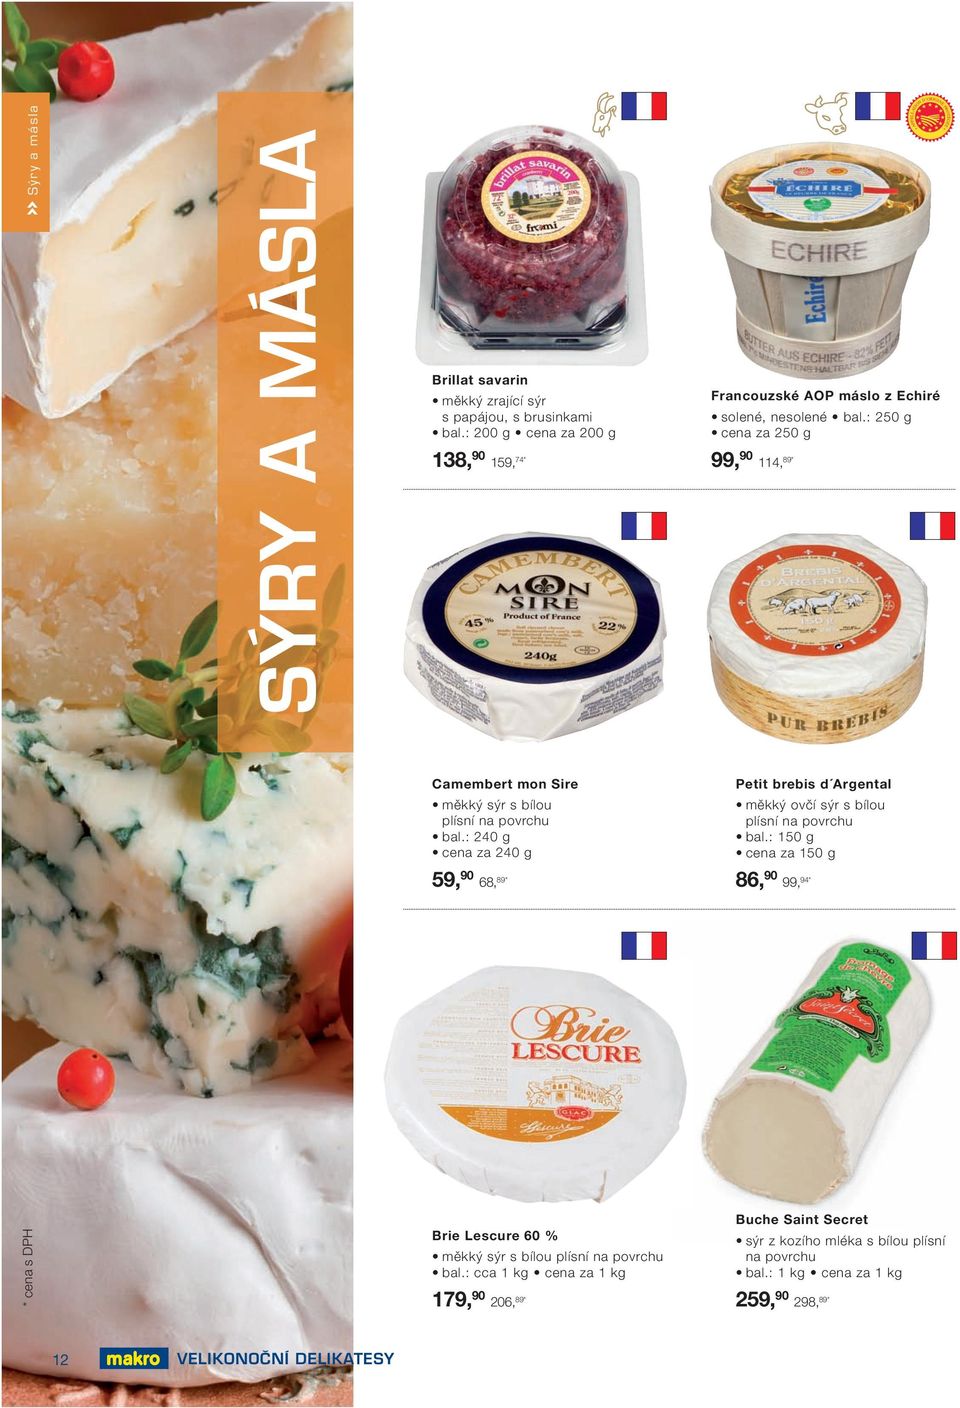 : 250 g cena za 250 g 99, 90 114, 89 * Camembert mon Sire Petit brebis d Argental měkký sýr s bílou plísní na povrchu bal.